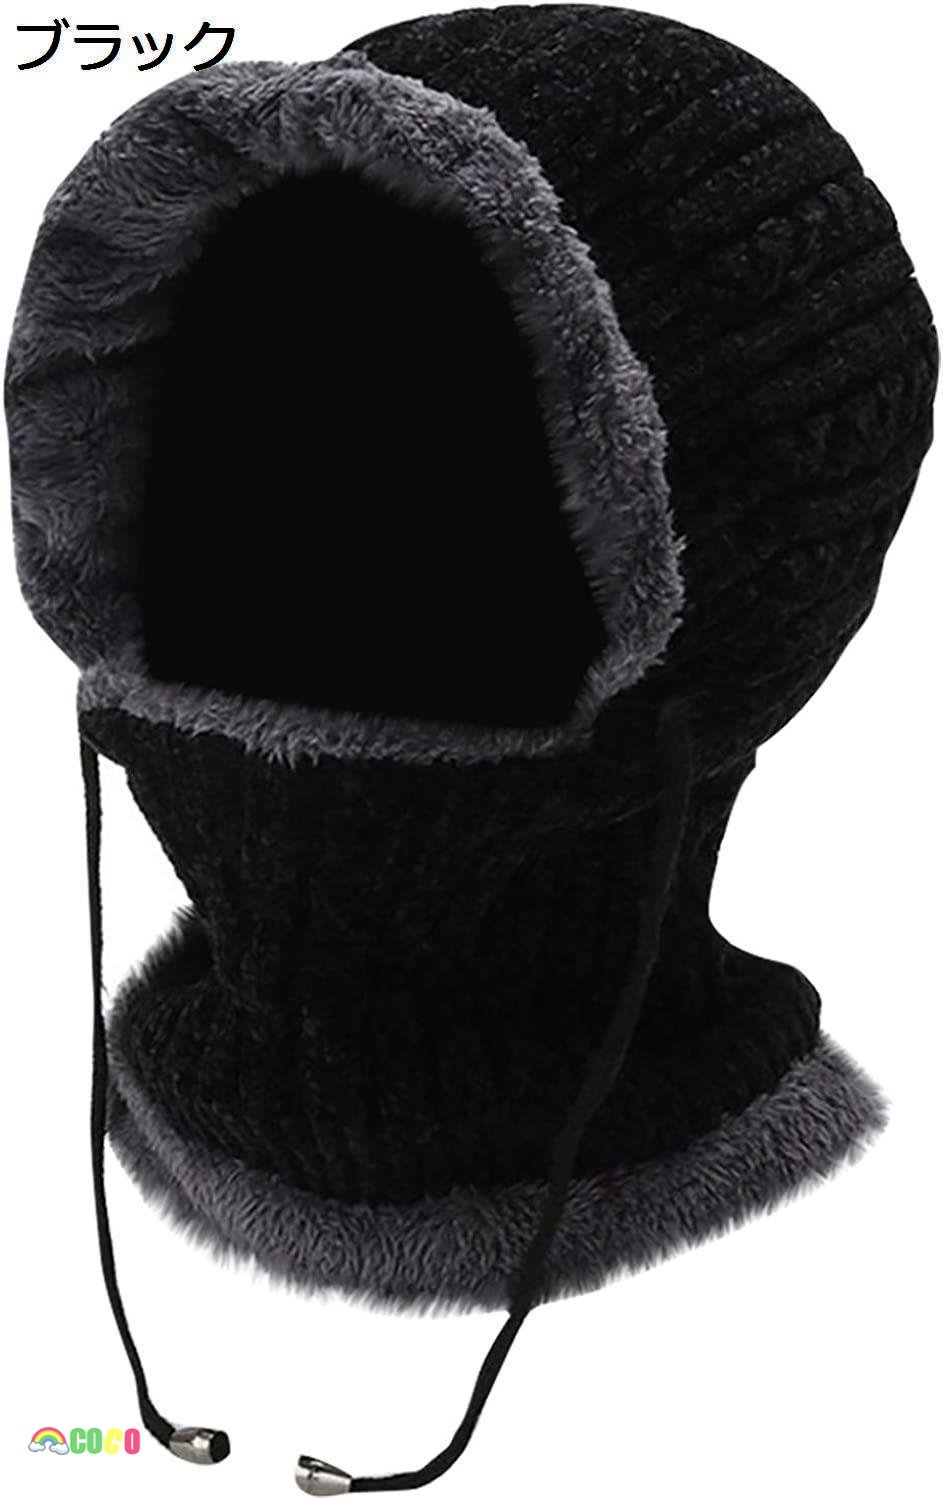 ニット帽子 キャップ 裏起毛 防寒 保温強化 内側に暖かい綿毛 柔らかい ニット帽子 肌に優しい 柔...